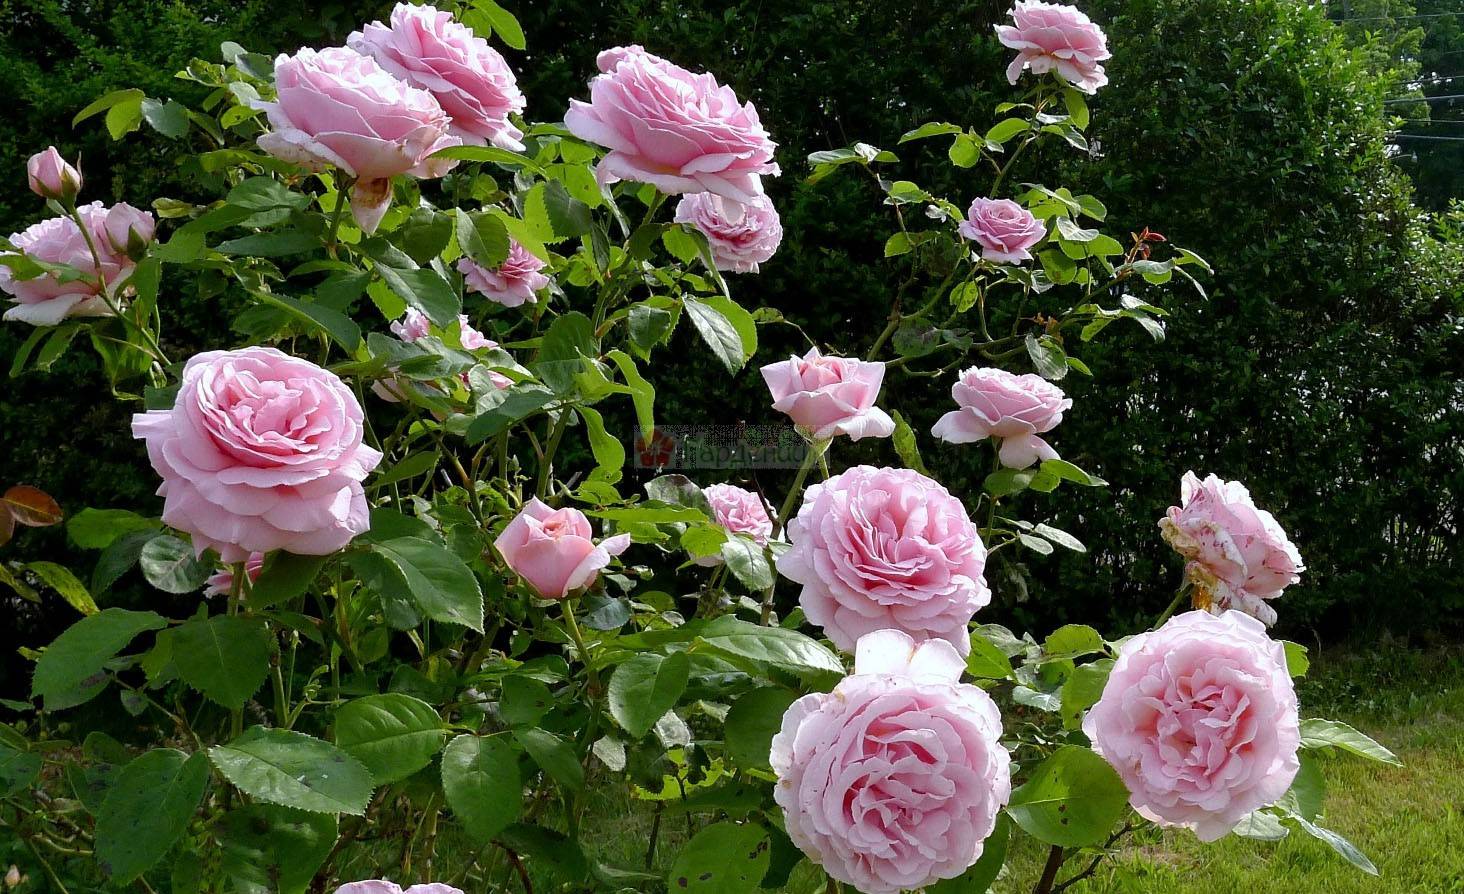 Чайно гибридные розы, как правильно посадить и требуемый уход, защита от вредителей и болезней